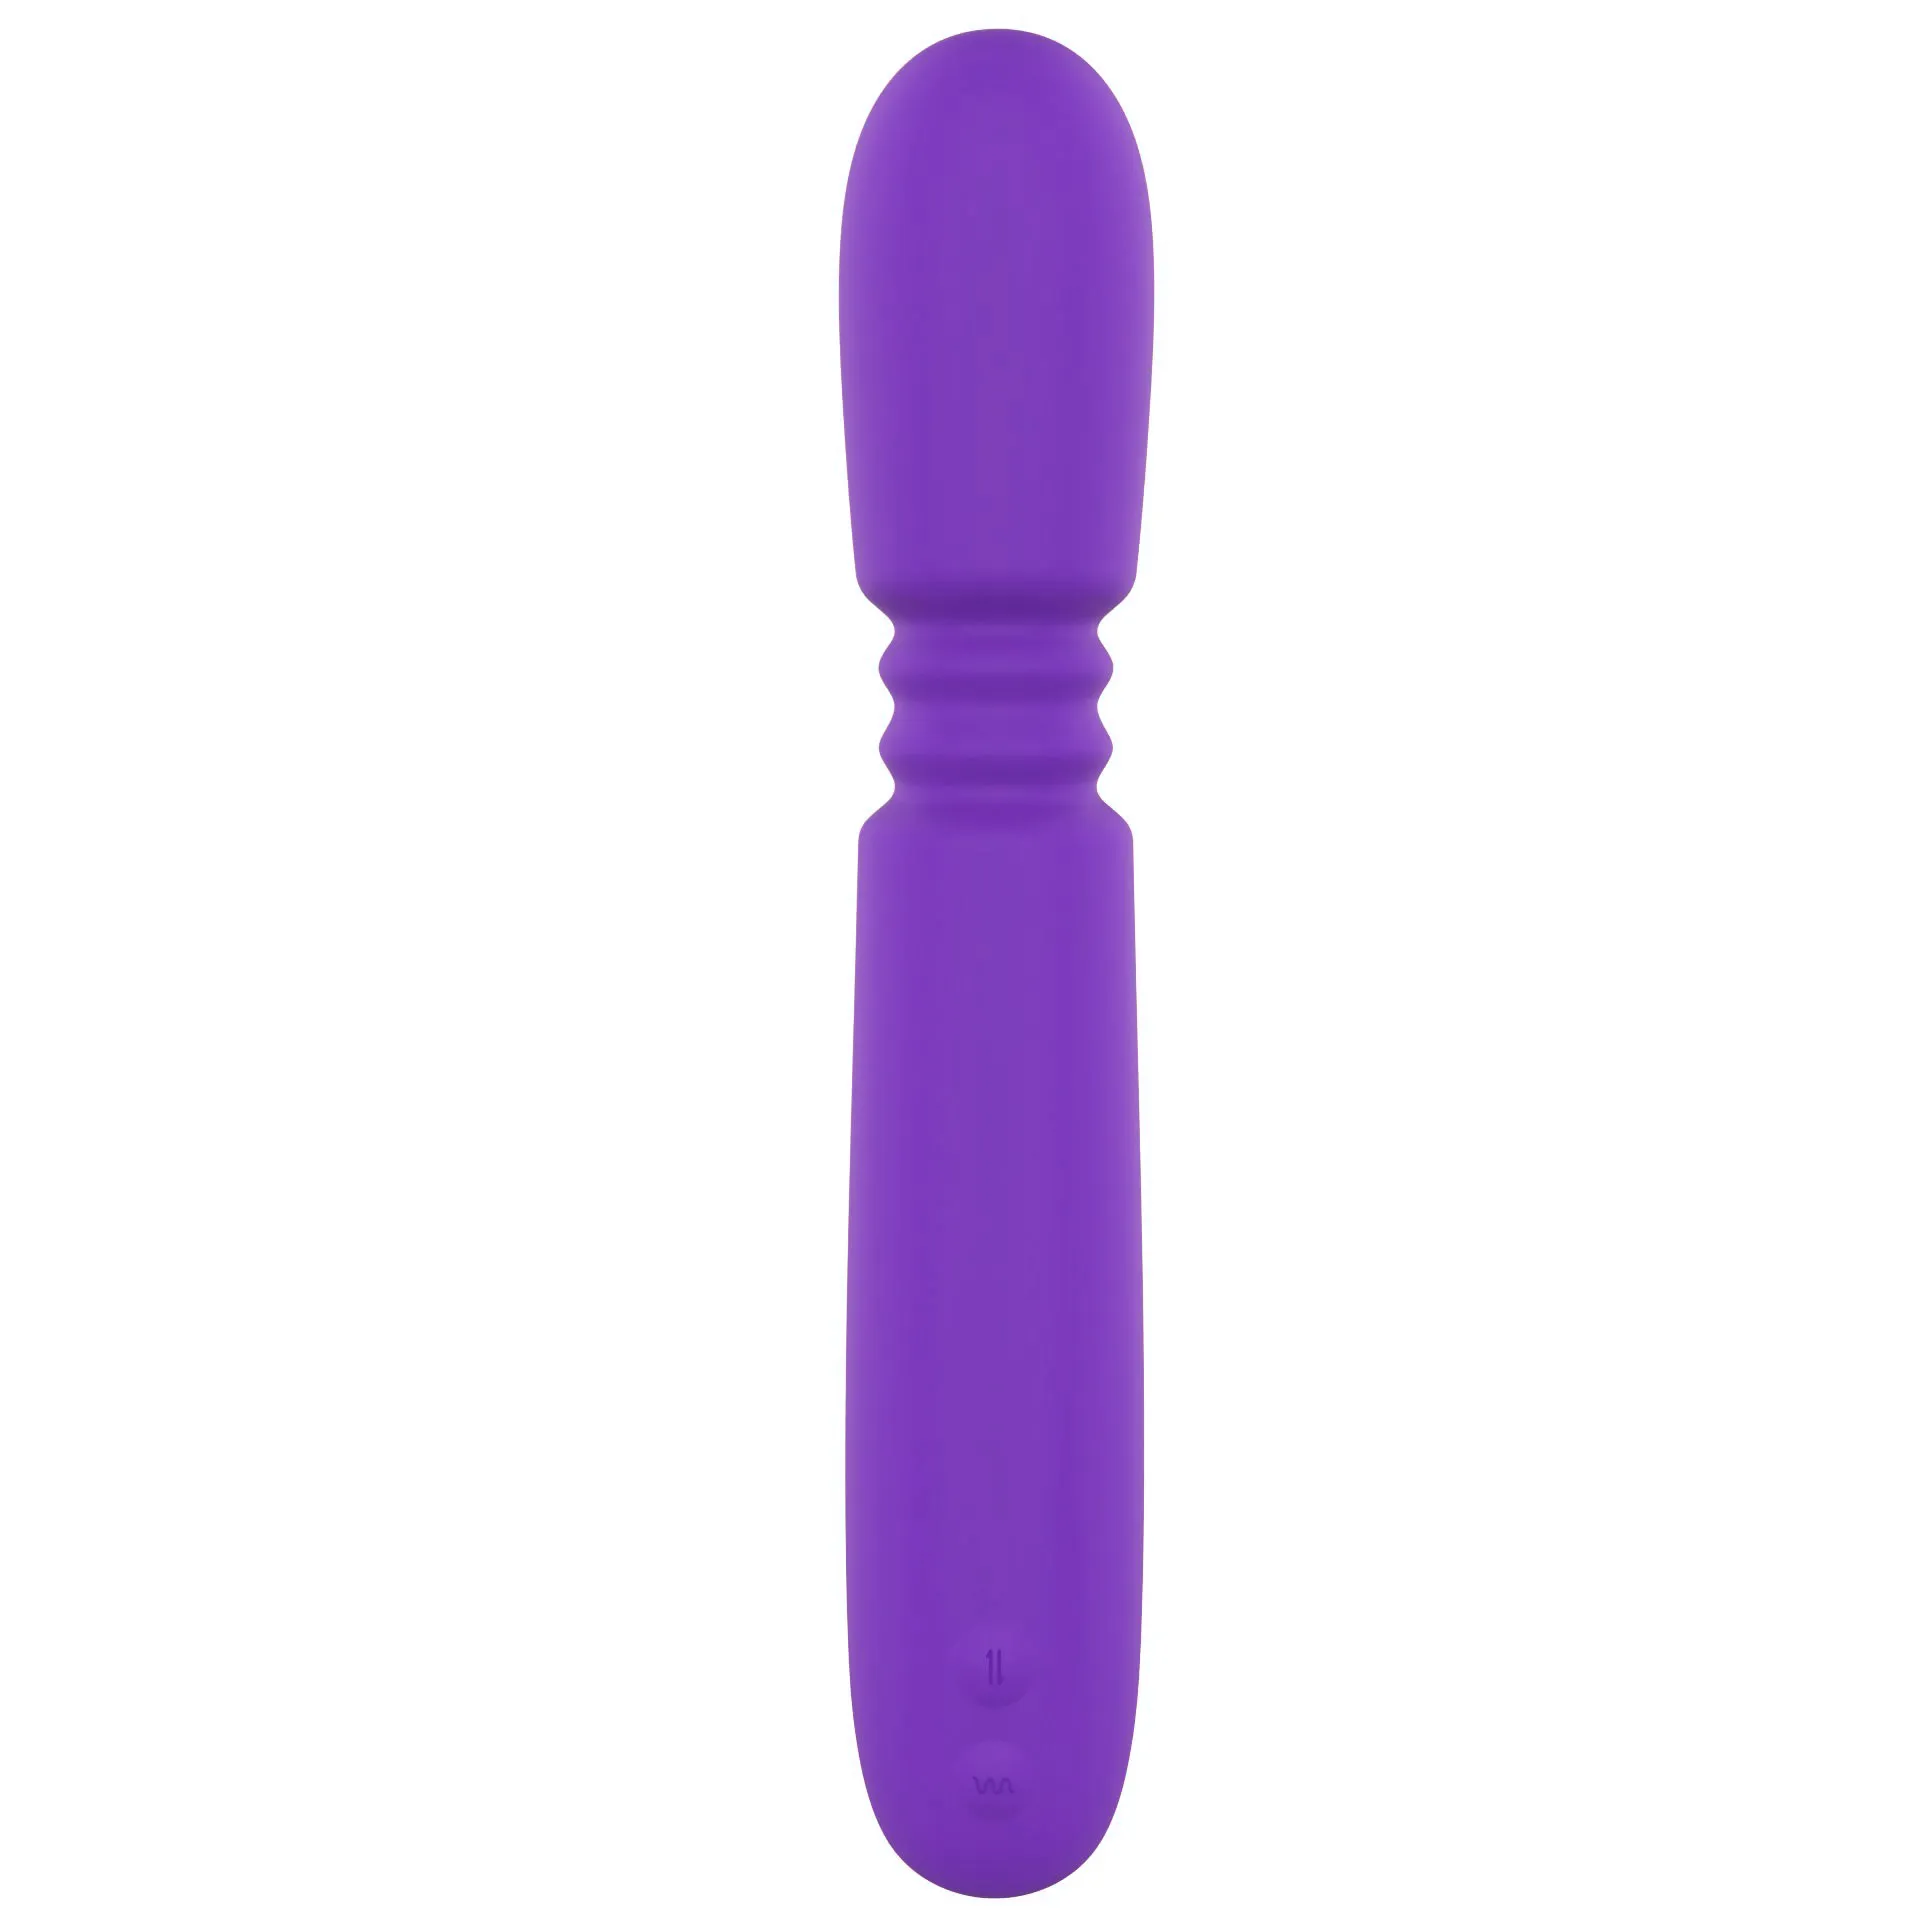 AV Stick Vibrator Godes Télescopiques Clit Nipper Clitoris Stimulateur Vaginal G Spot Massage Masturbateur Femme Sexy Jouet Pour Femmes